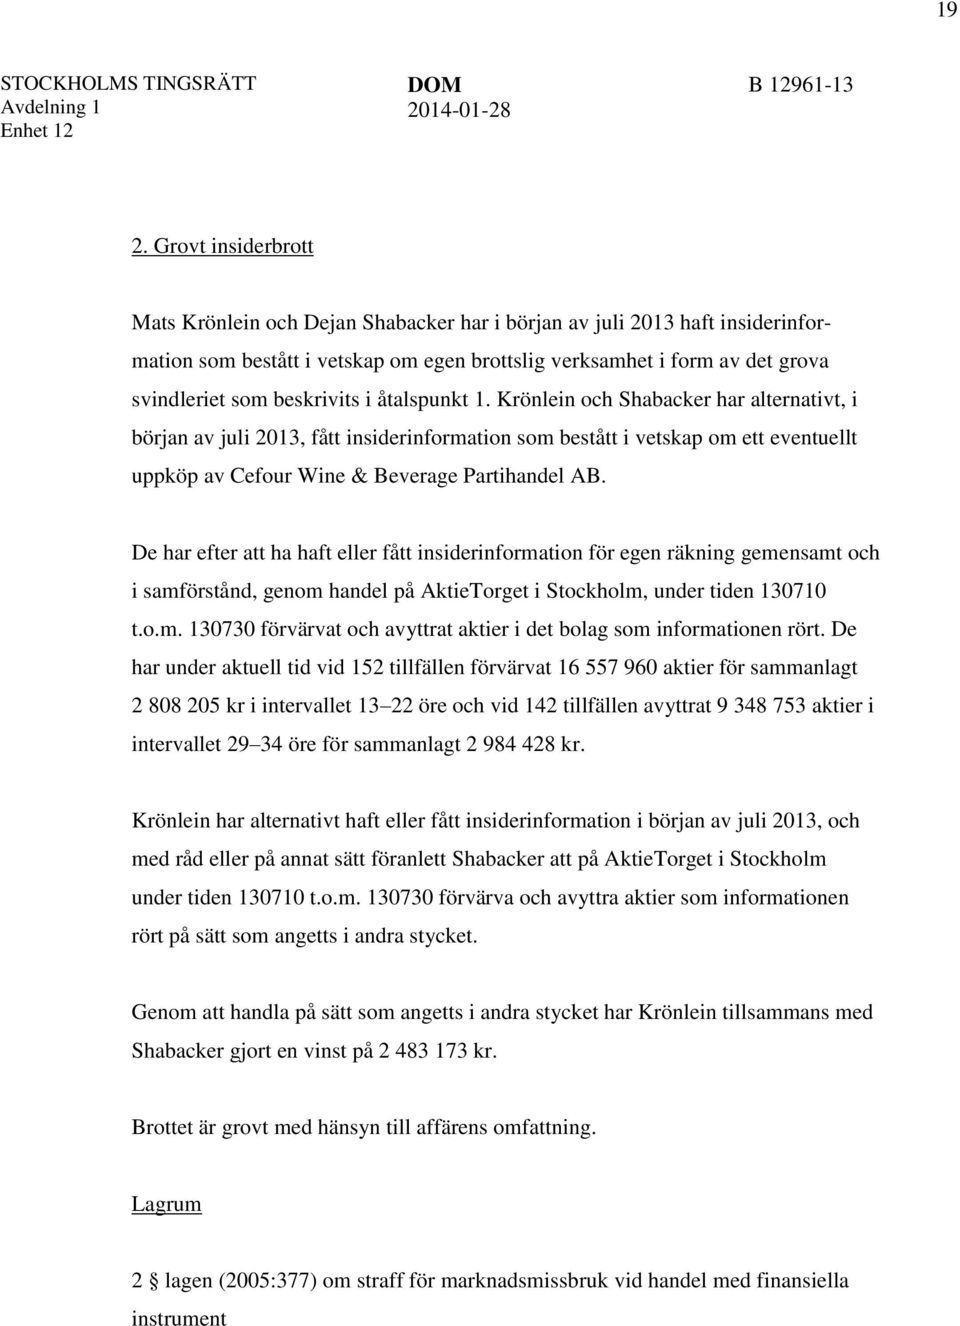 Krönlein och Shabacker har alternativt, i början av juli 2013, fått insiderinformation som bestått i vetskap om ett eventuellt uppköp av Cefour Wine & Beverage Partihandel AB.